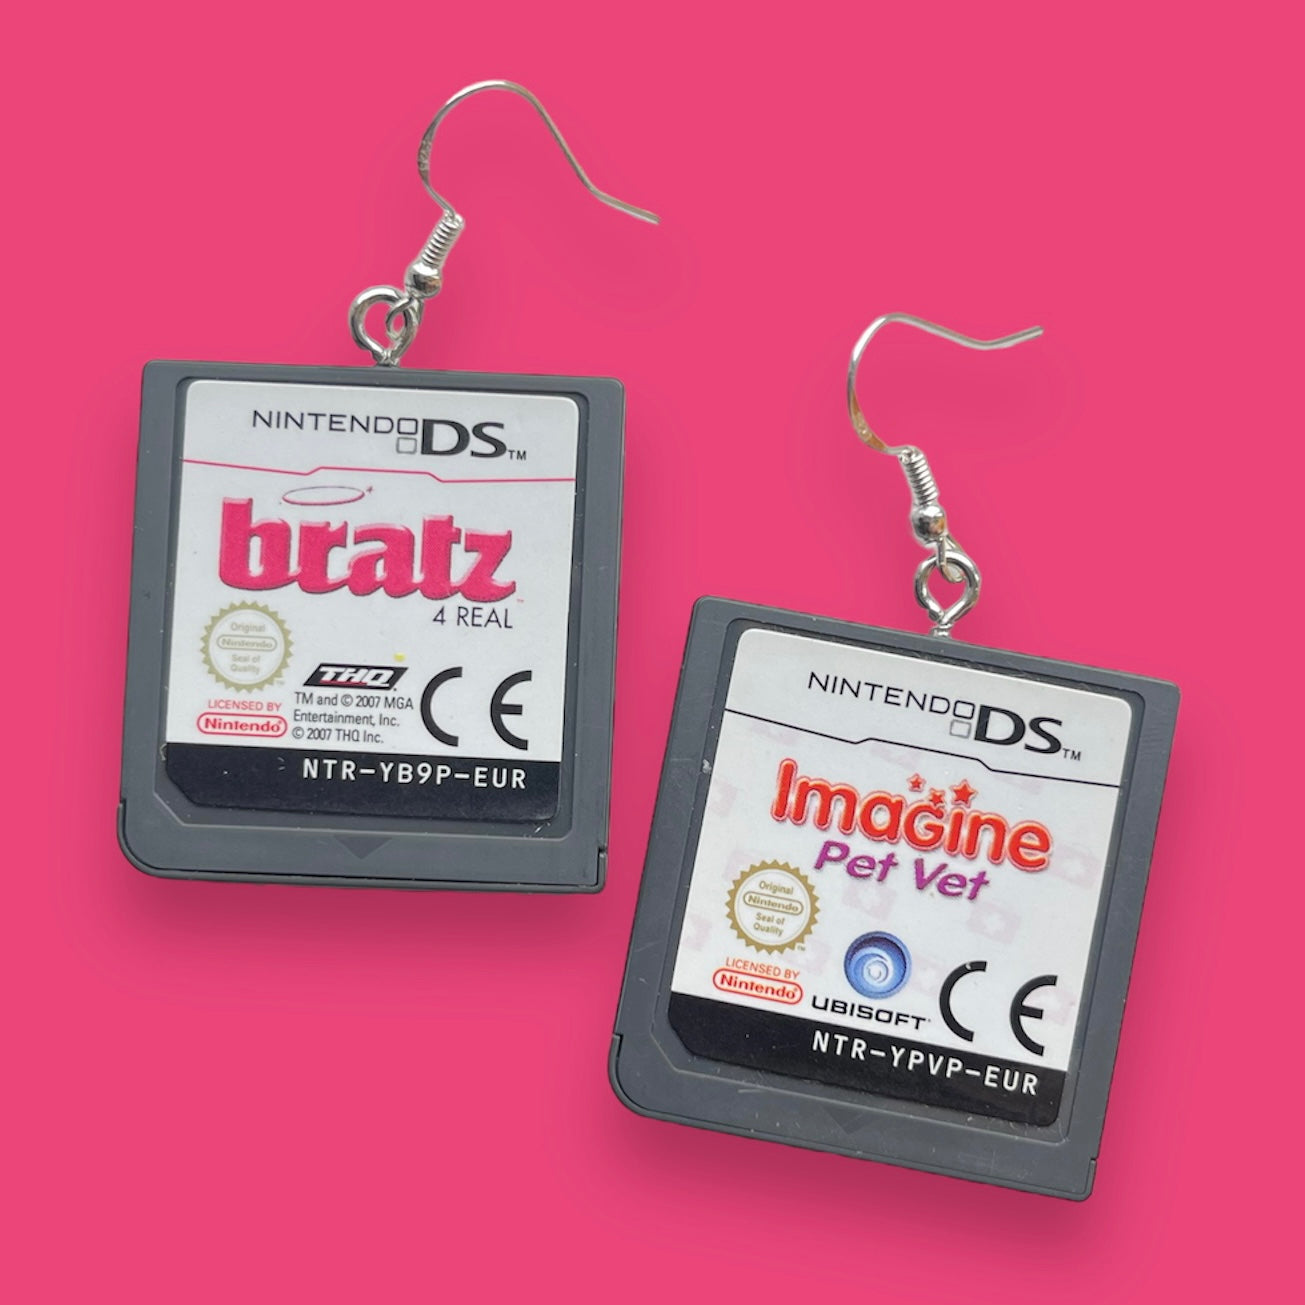 Bratz and Imagine Pet Vet DS Earrings